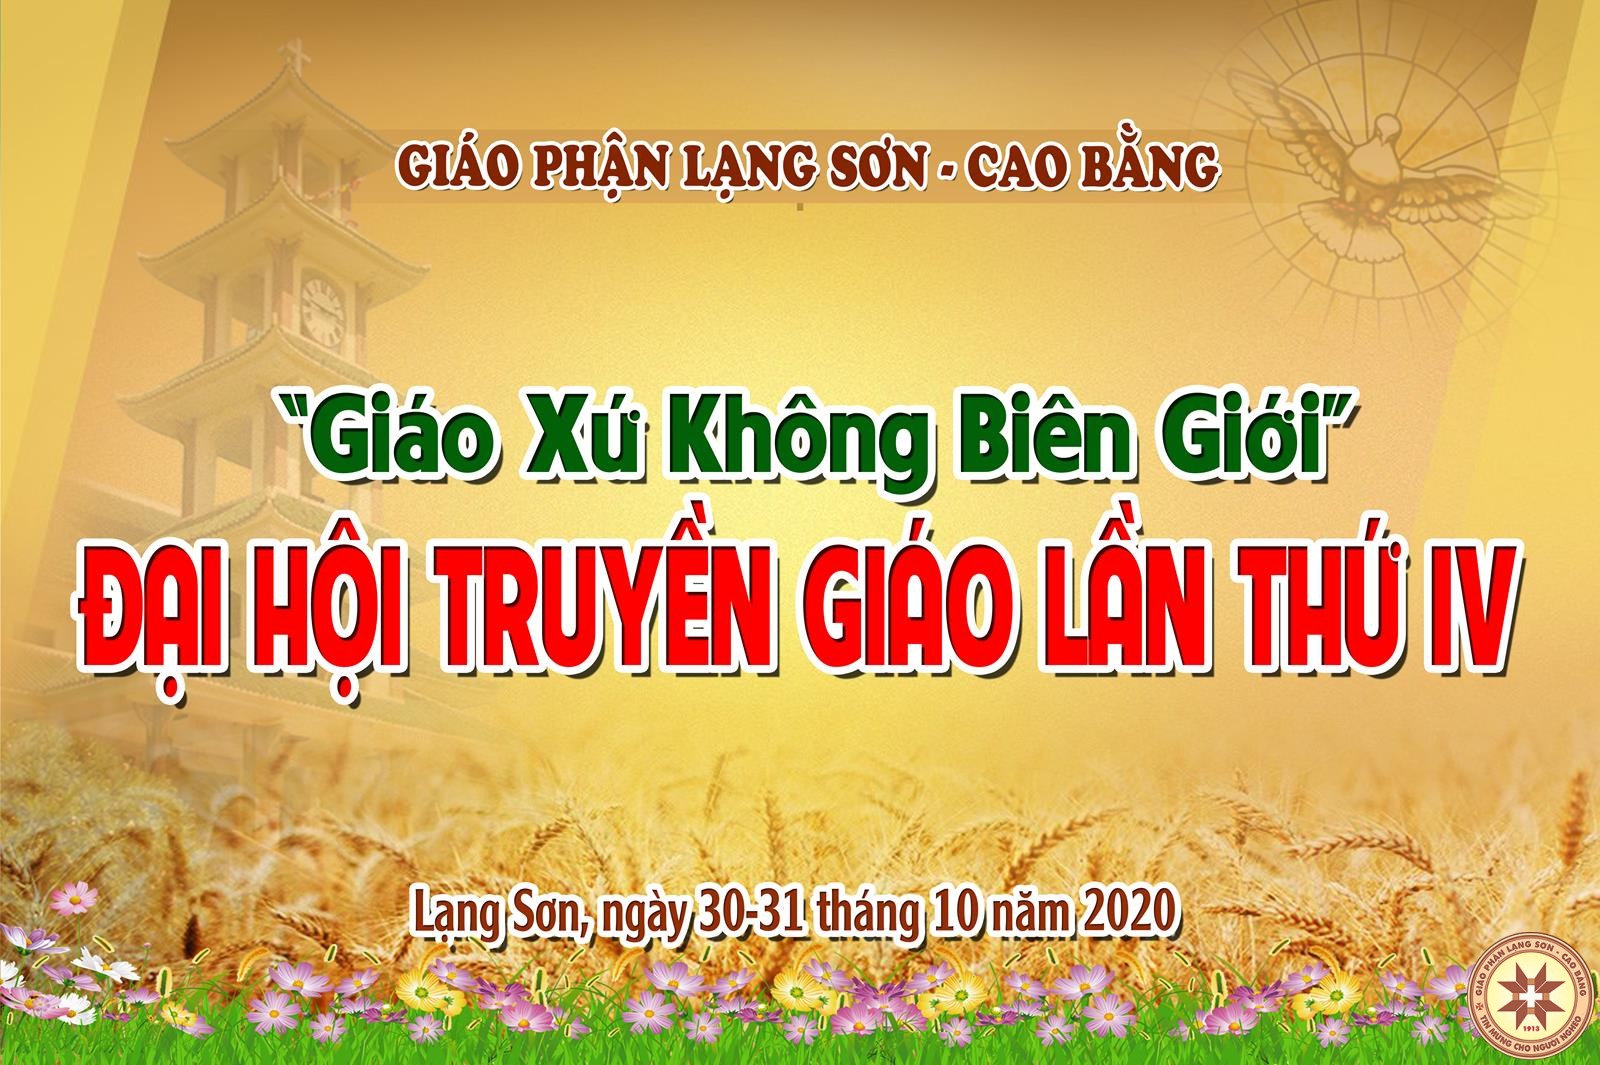 GP.Lạng Sơn - Khai mạc Đại hội Truyền Giáo lần thứ IV Giáo phận  Cao Bằng